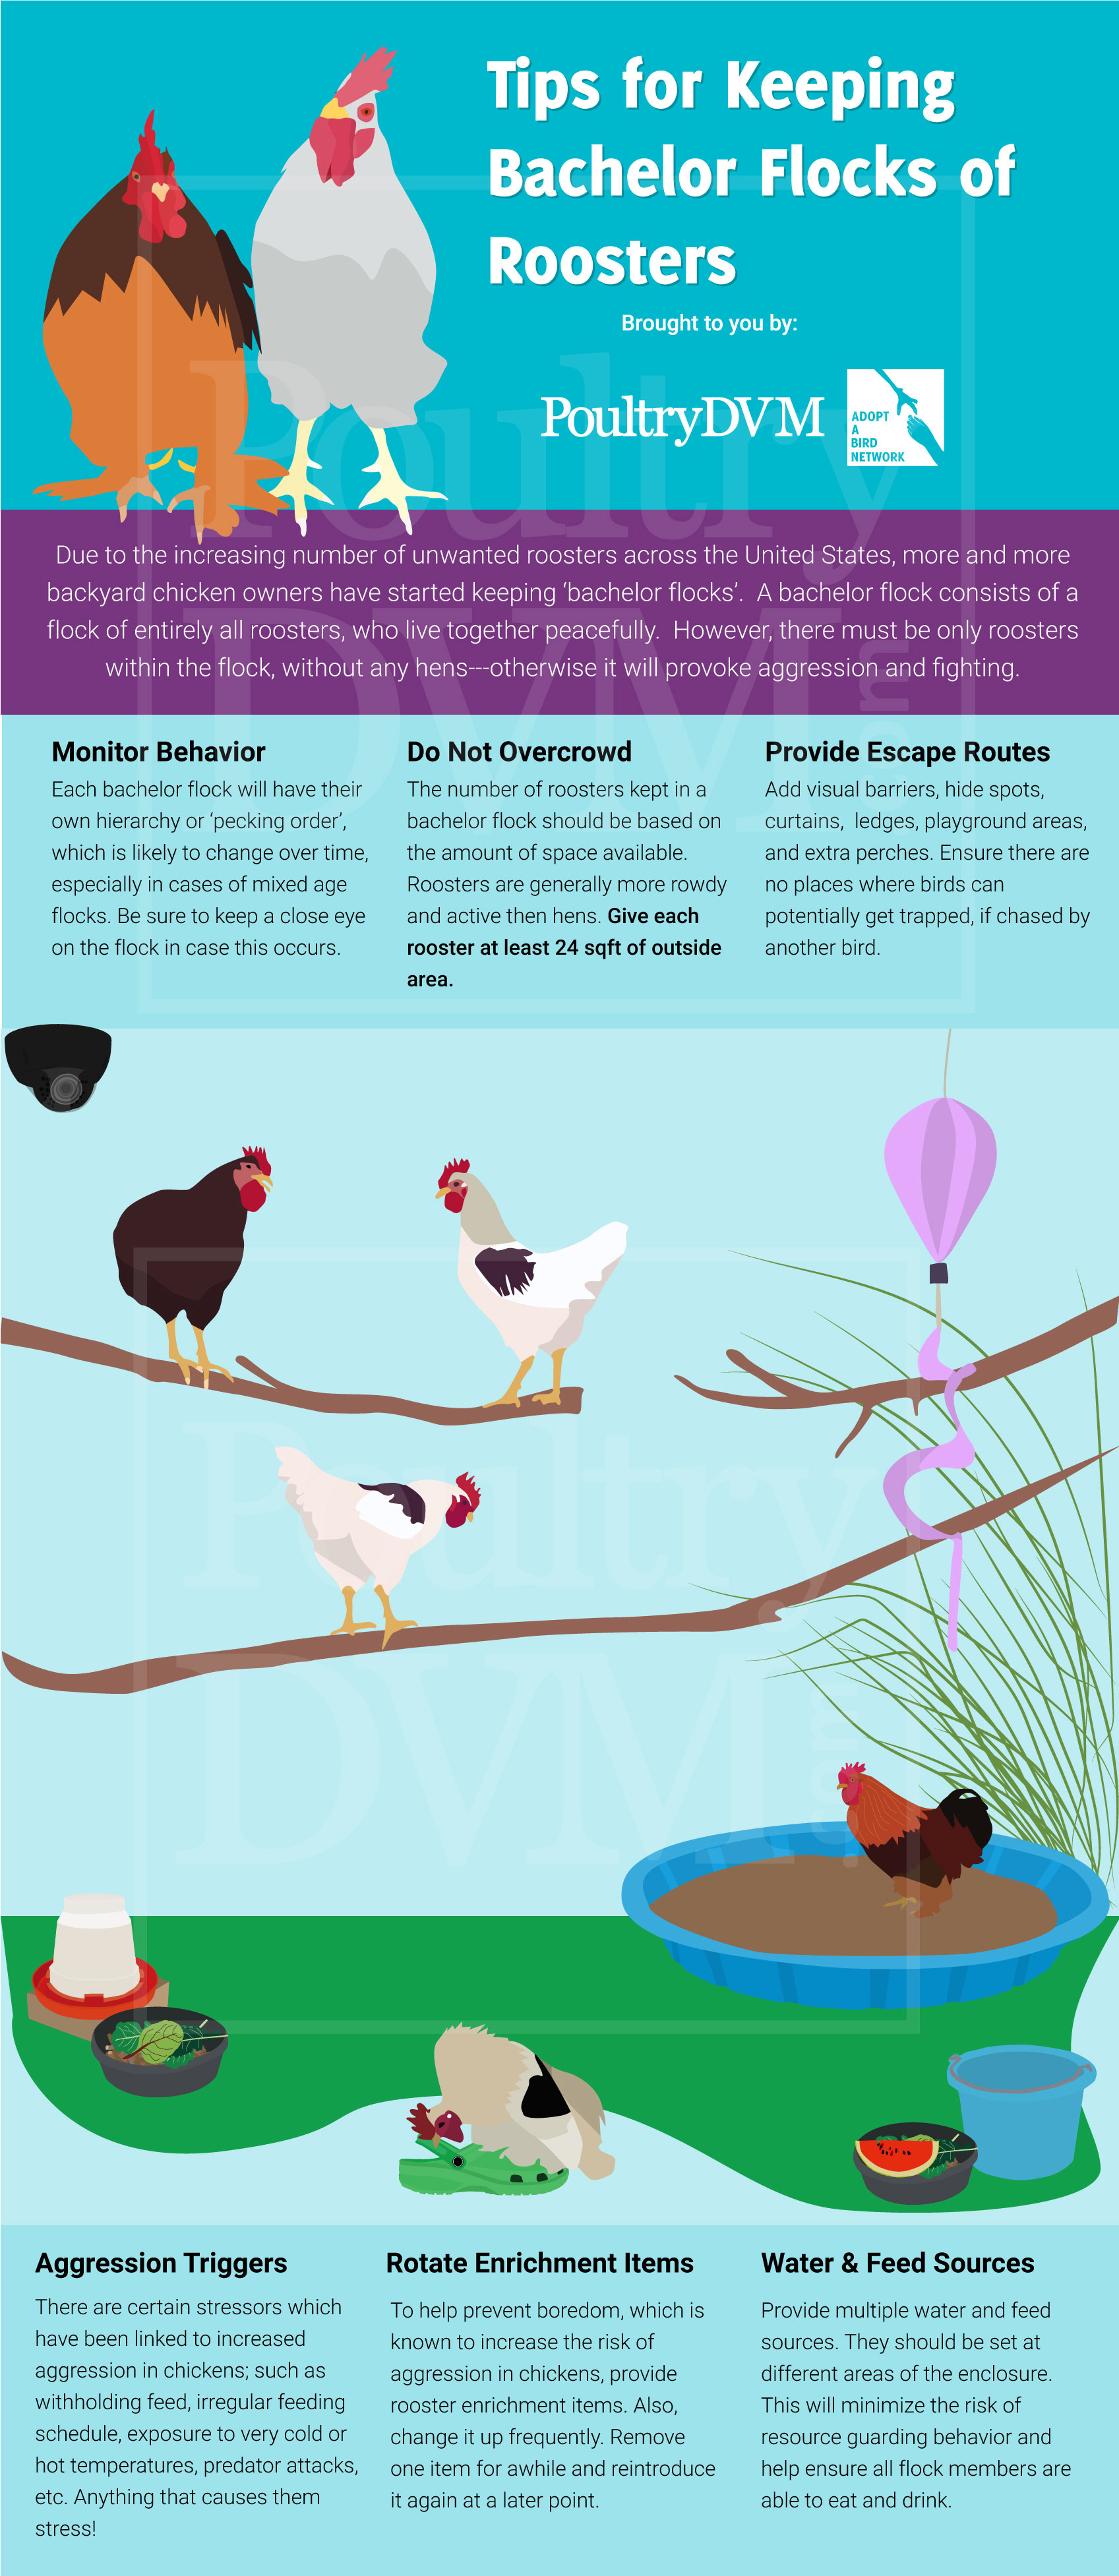 PoultryDVM - Tips for Keeping Bachelor Flocks